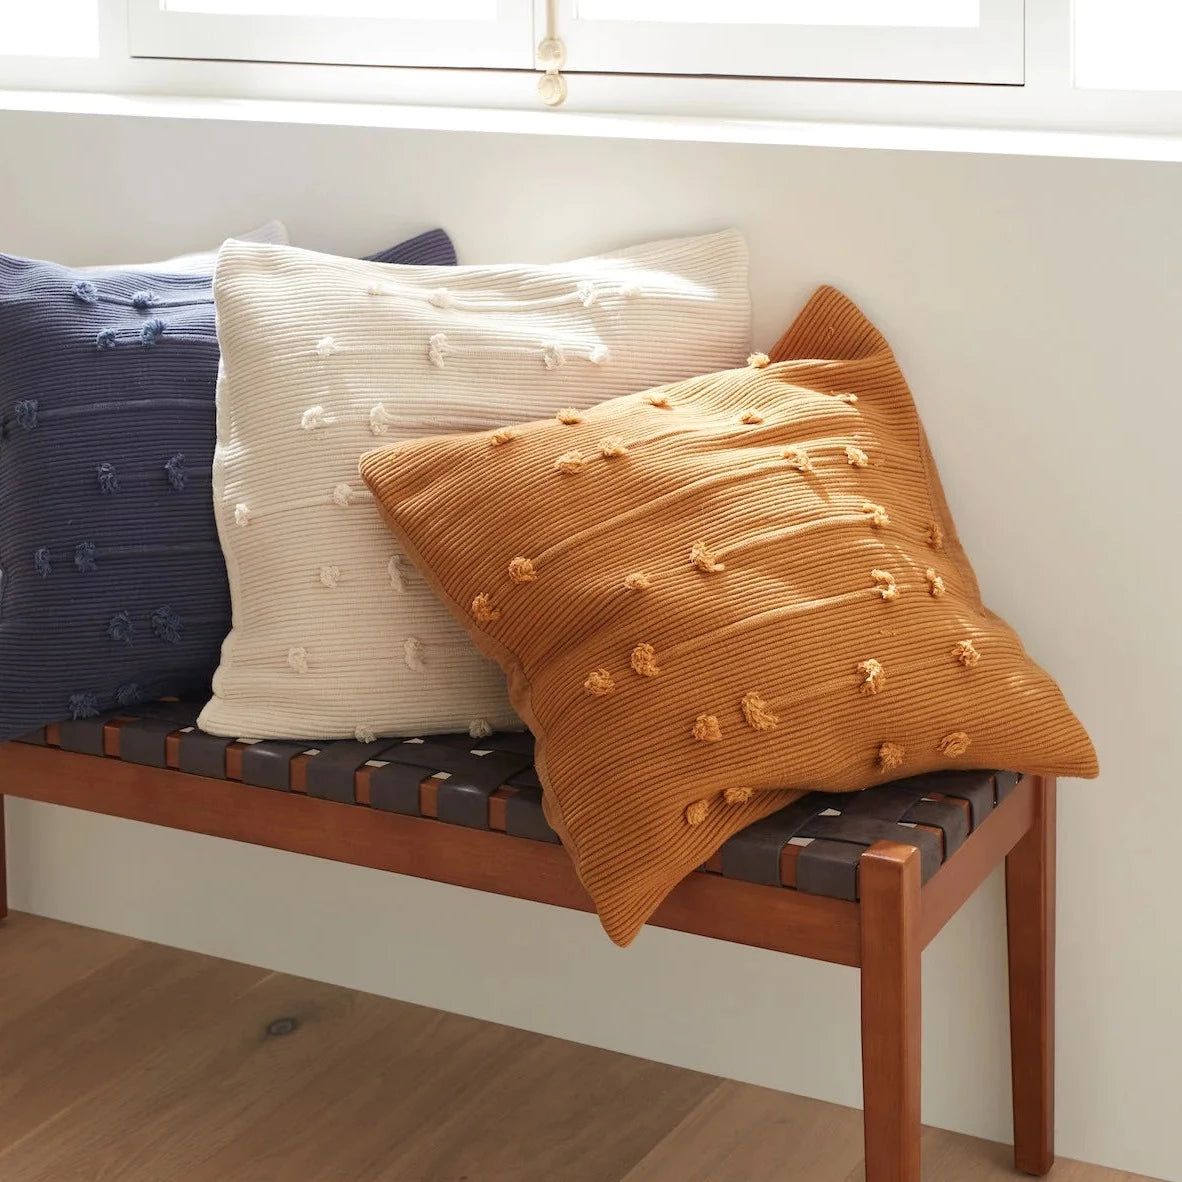 Organic Decorative Pillow